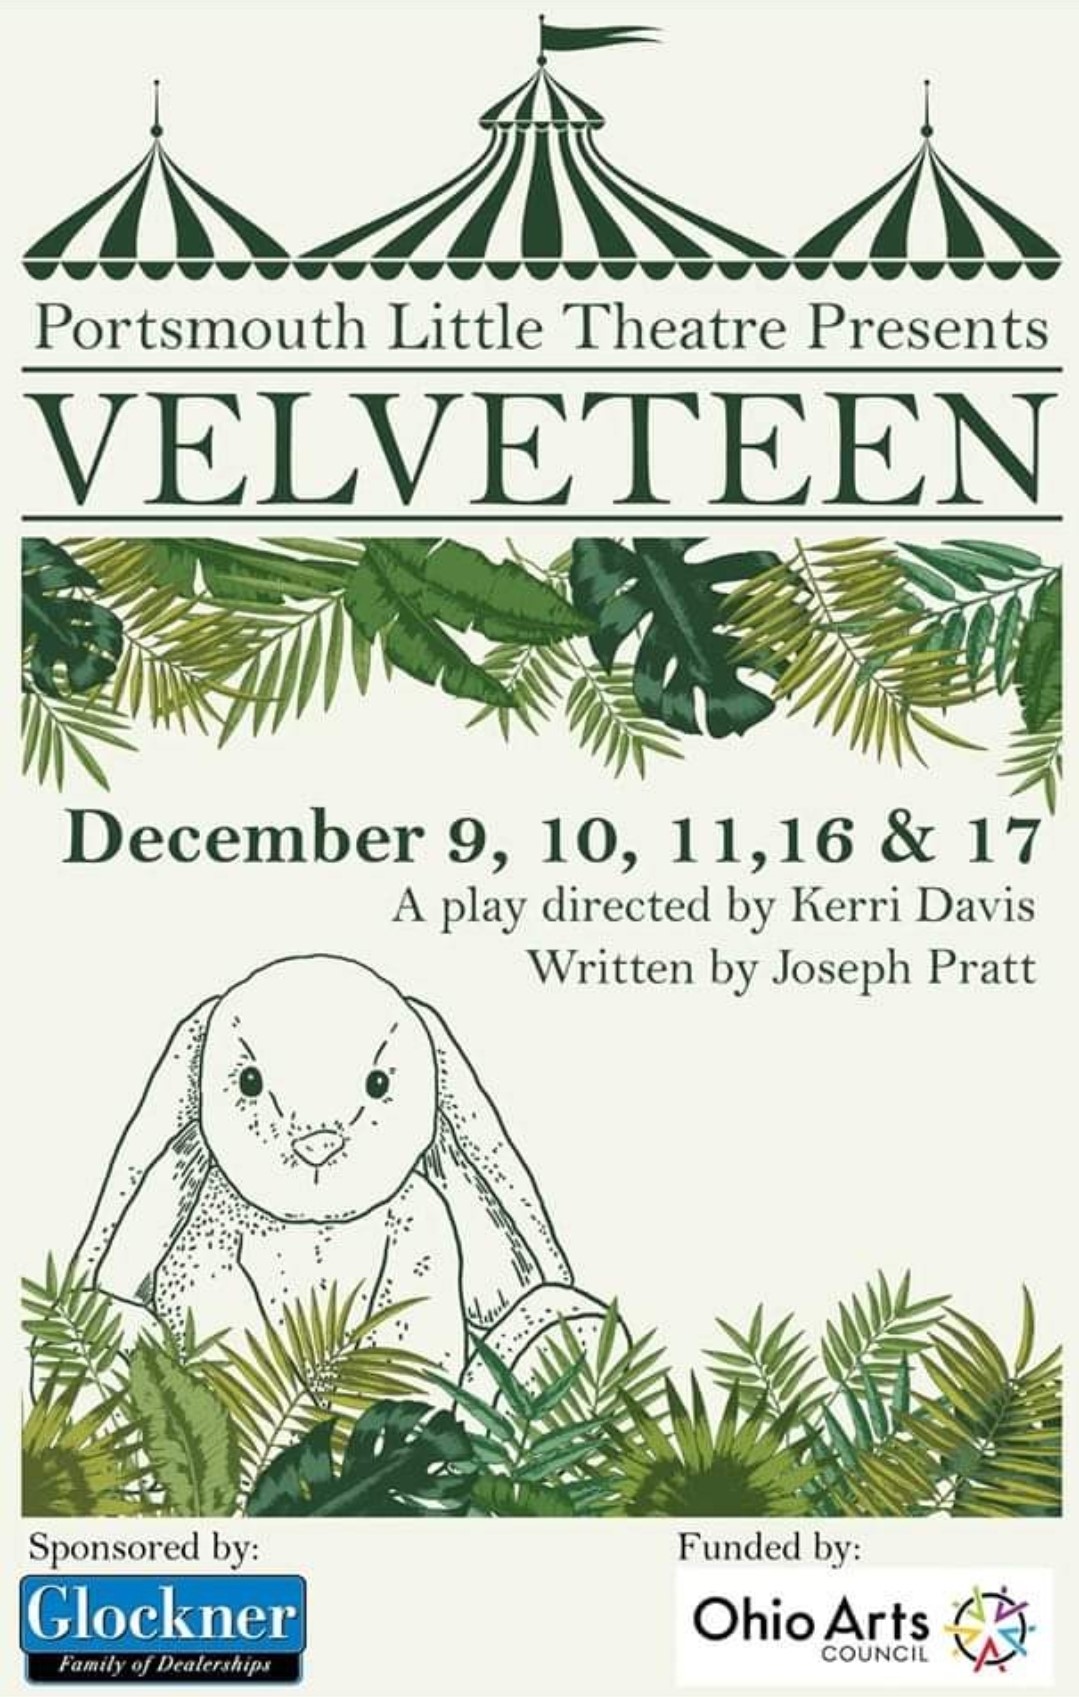 Velveteen  on dic. 16, 19:30@Portsmouth Little Theatre - Elegir asientoCompra entradas y obtén información enPortsmouth Little Theatre 